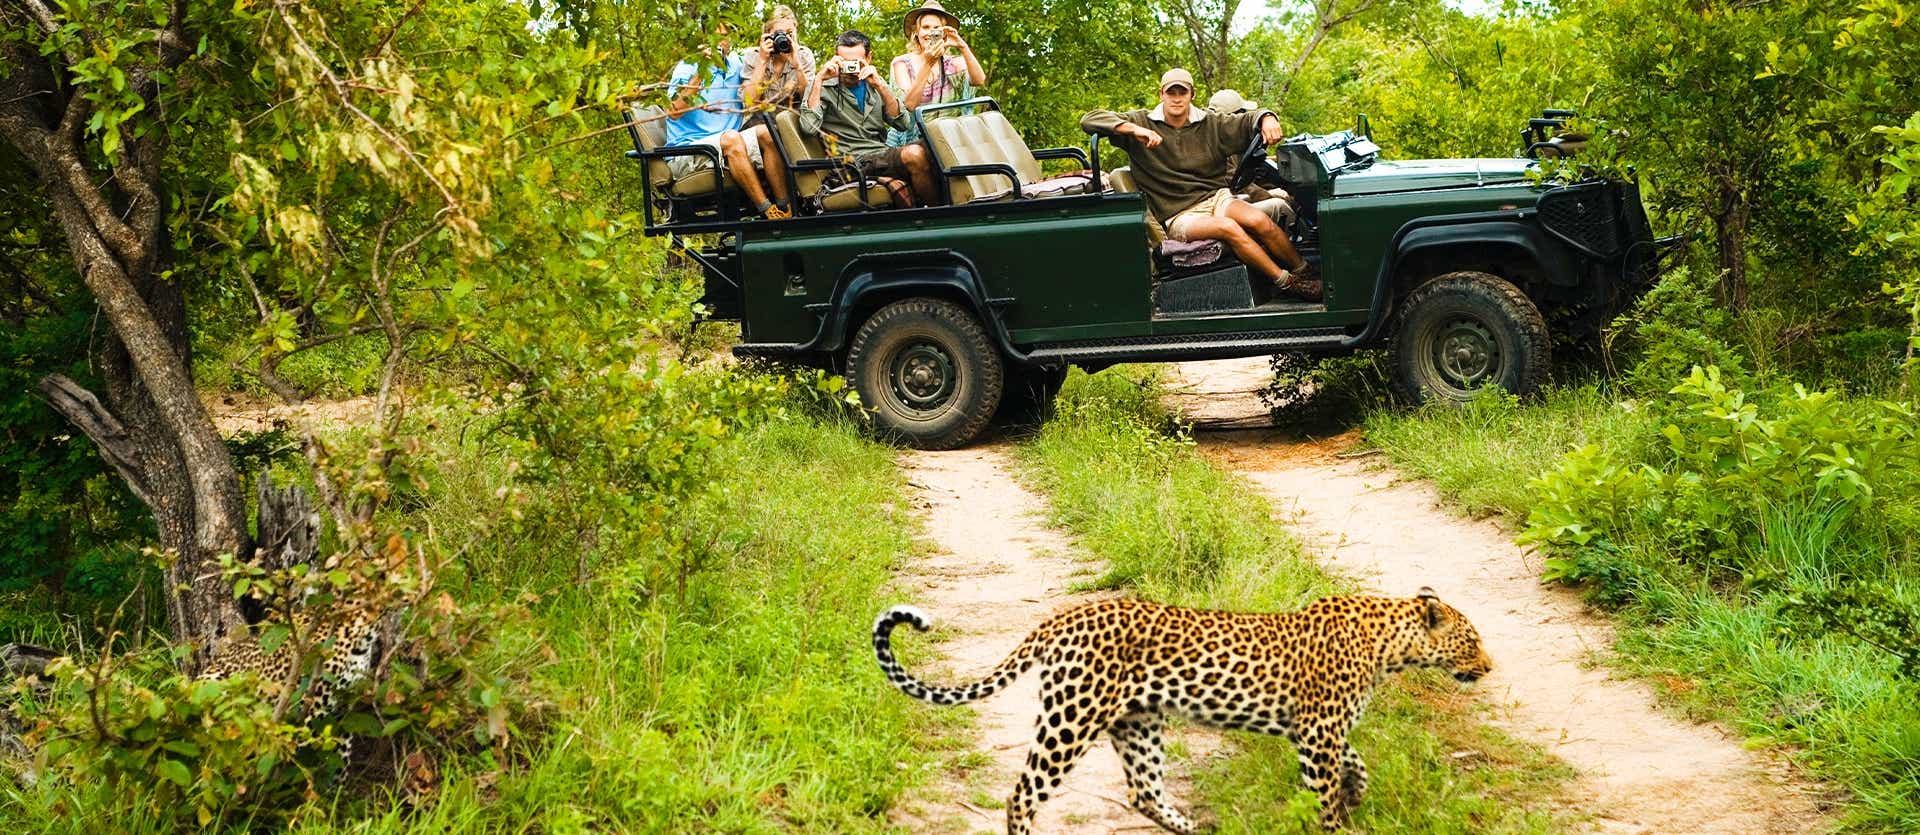 Kruger National Park <span class="iconos separador"></span> South Africa